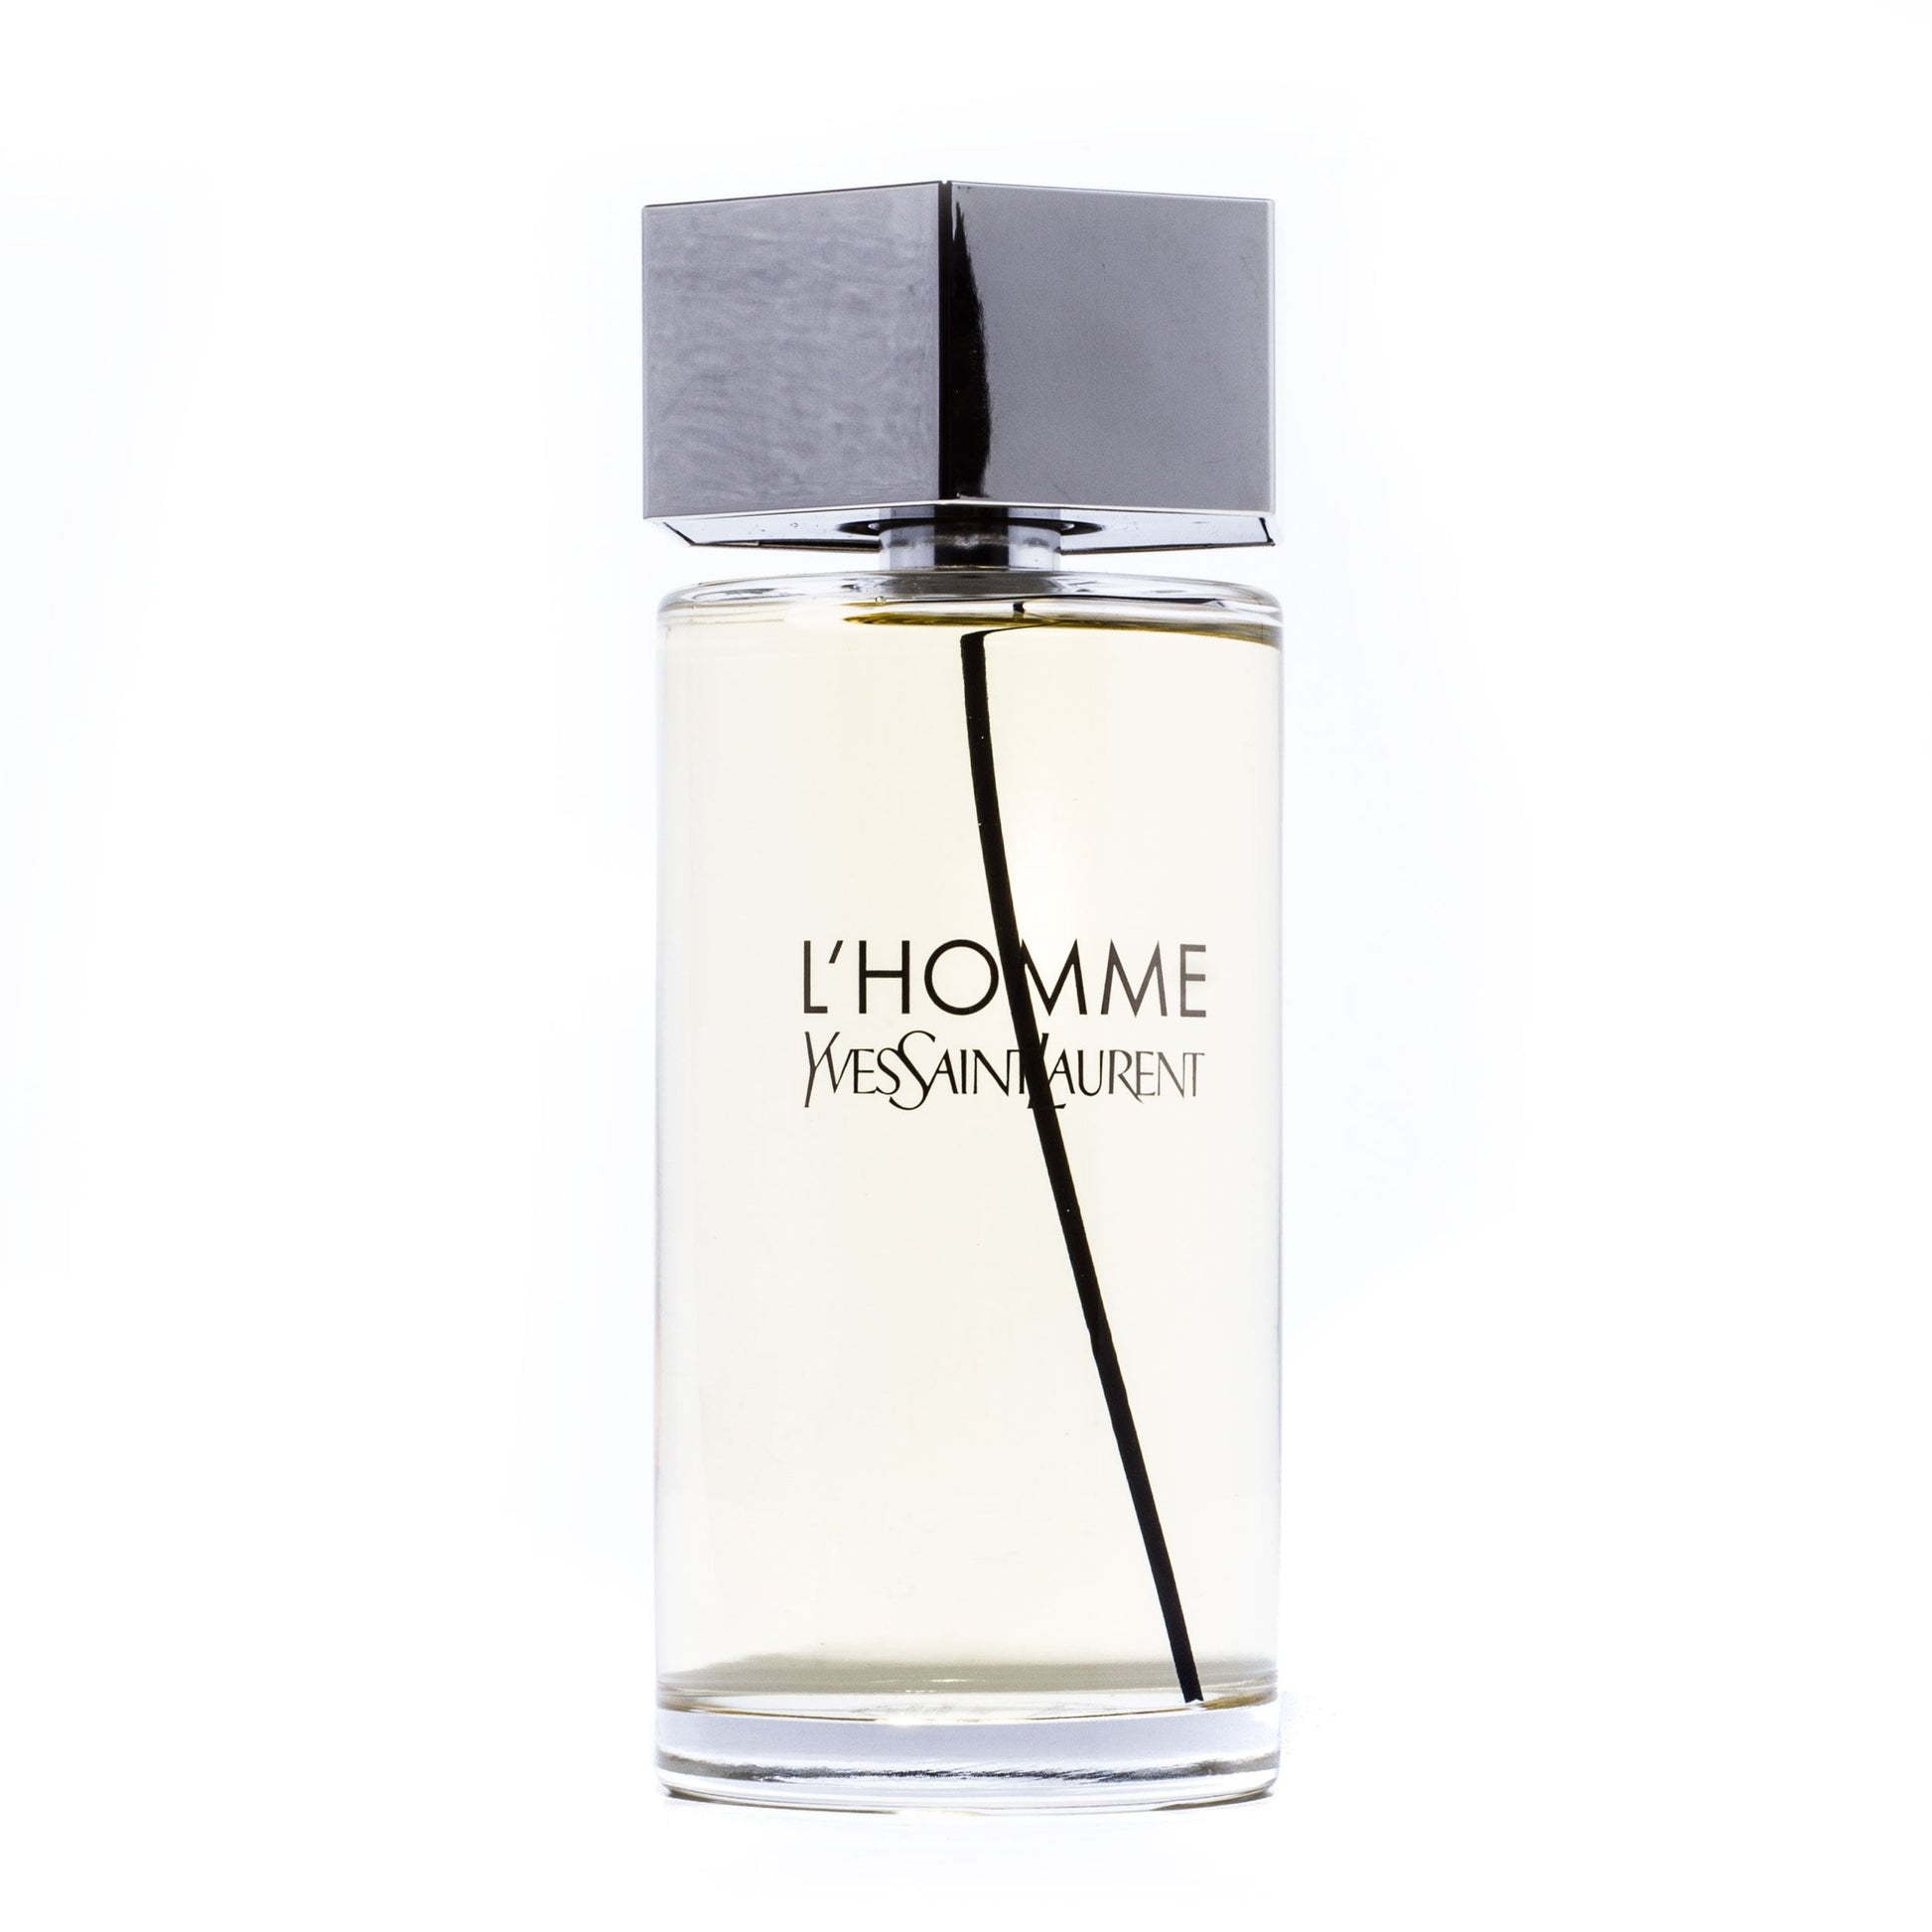 L'Homme Eau de Toilette Spray for Men by Yves Saint Laurent, Product image 5